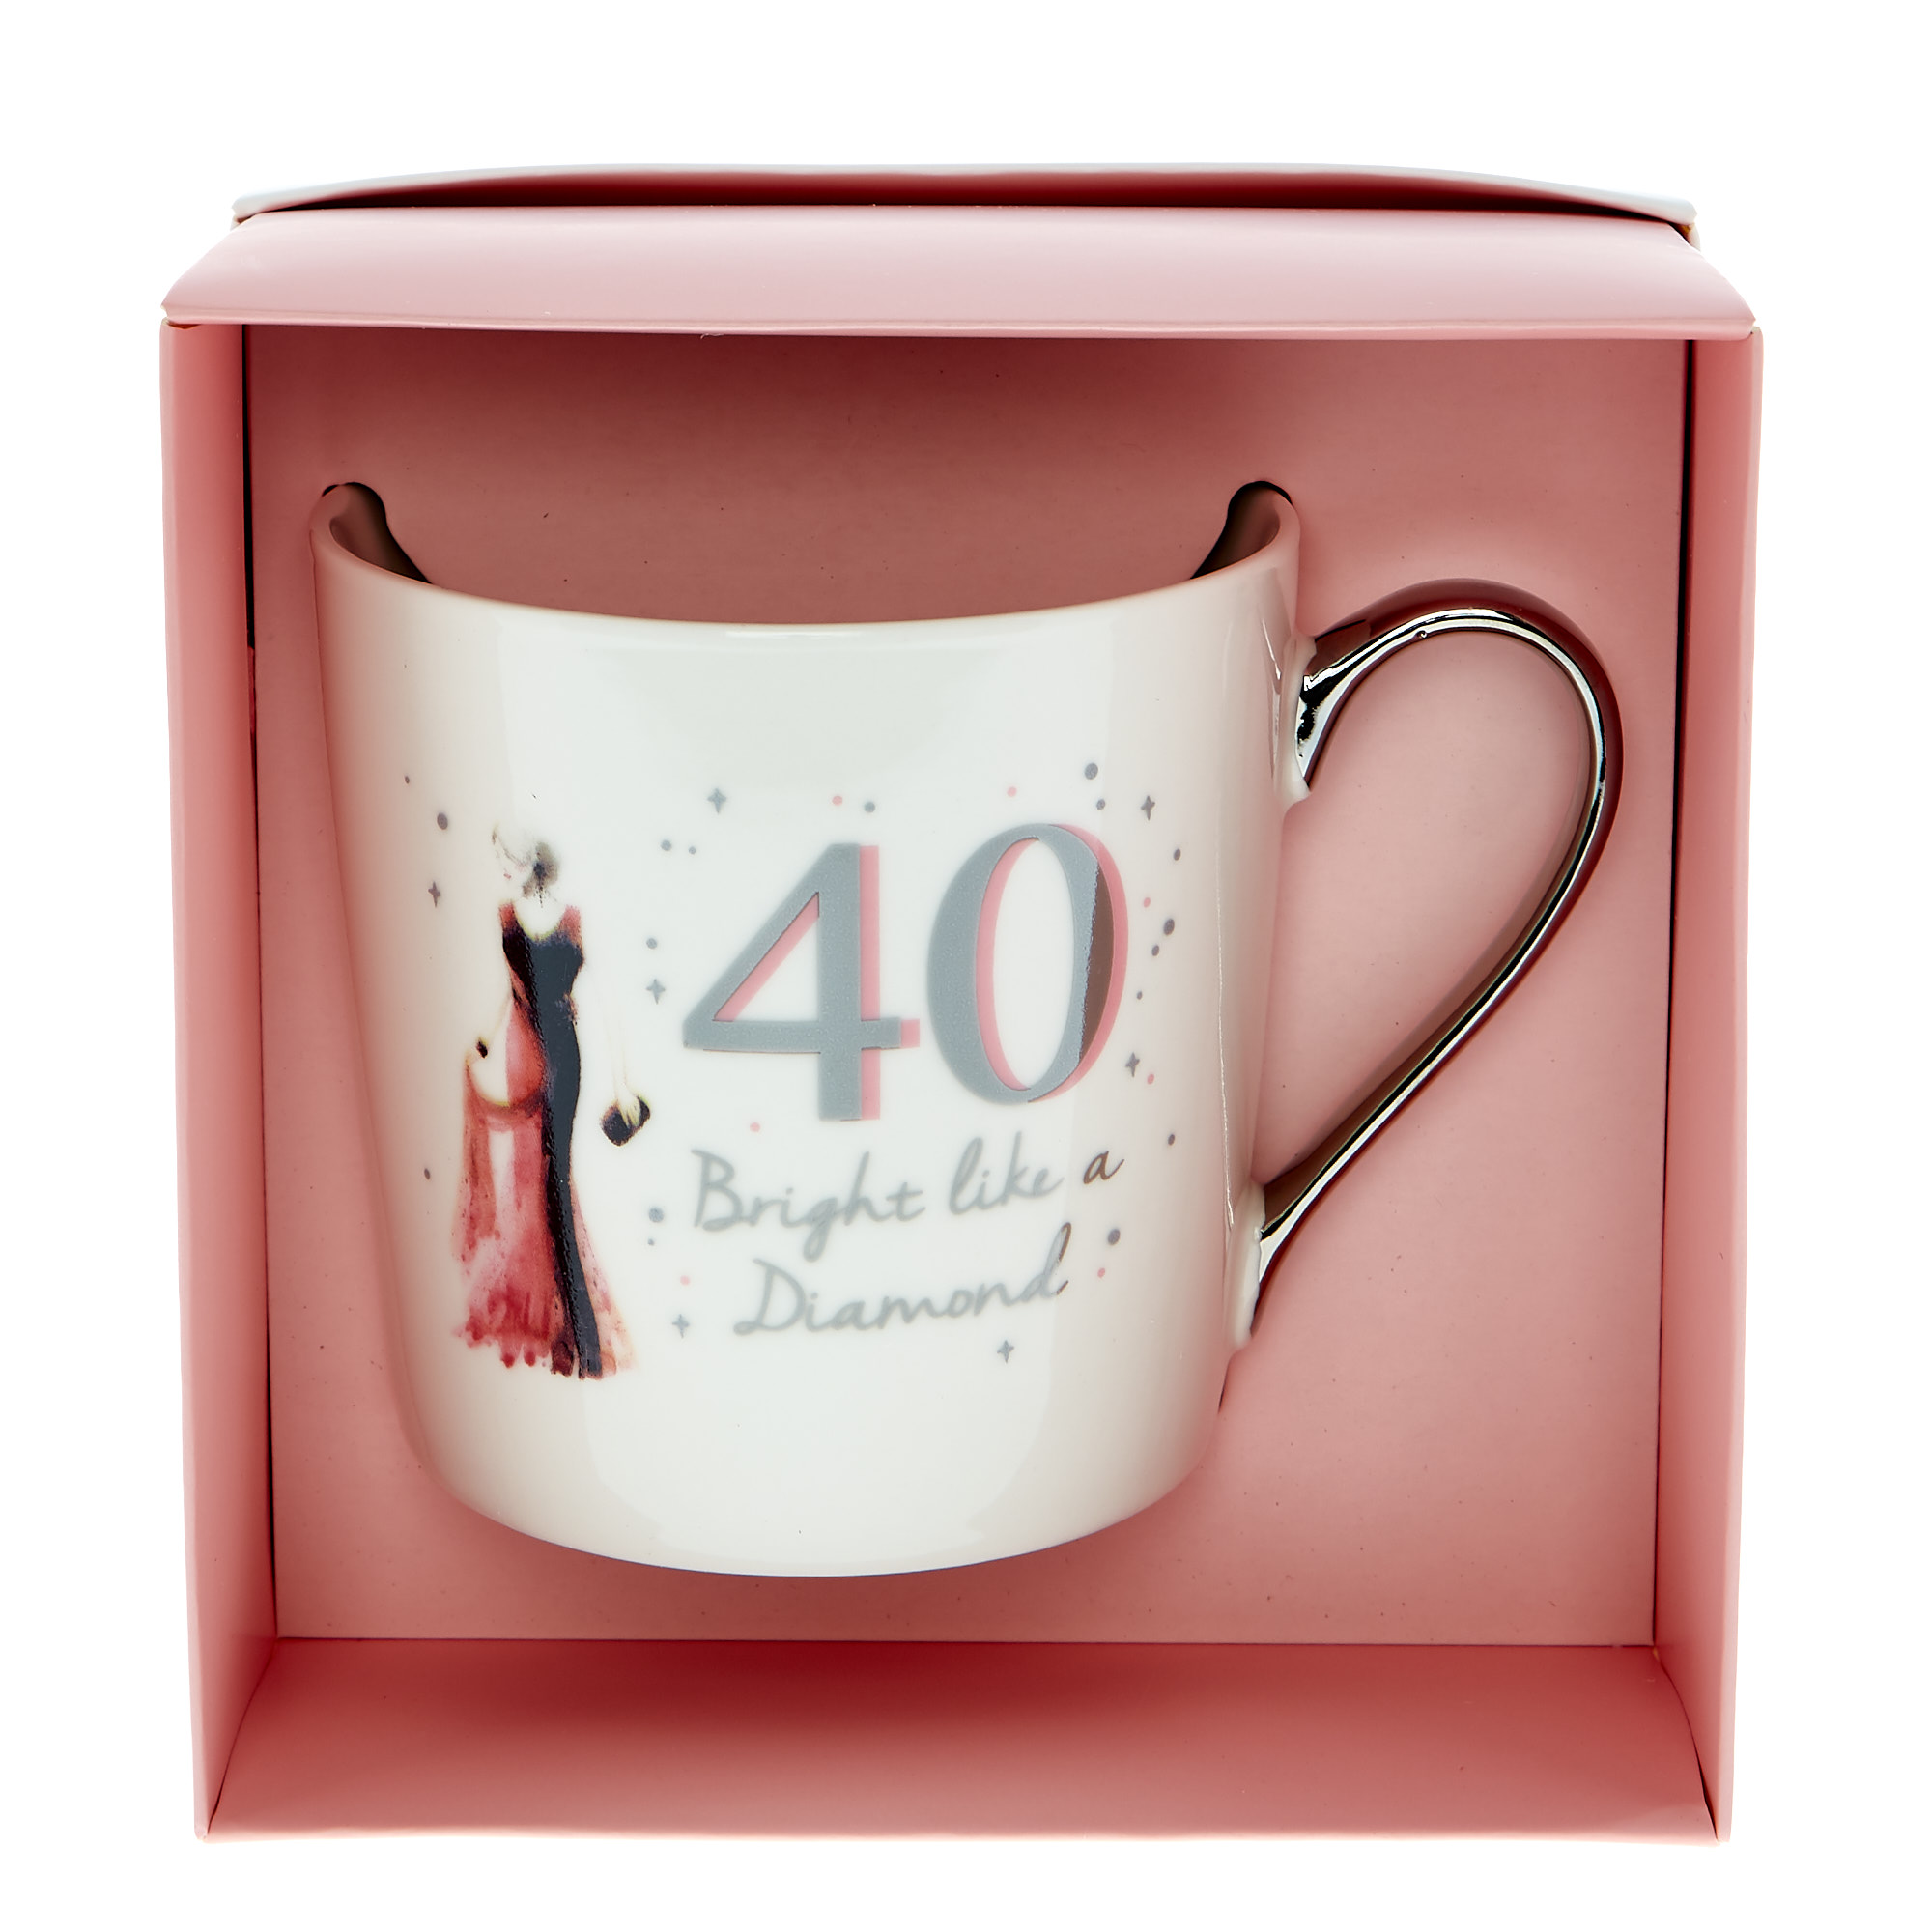 40th Birthday Mug In A Box - Bright Like A Diamond